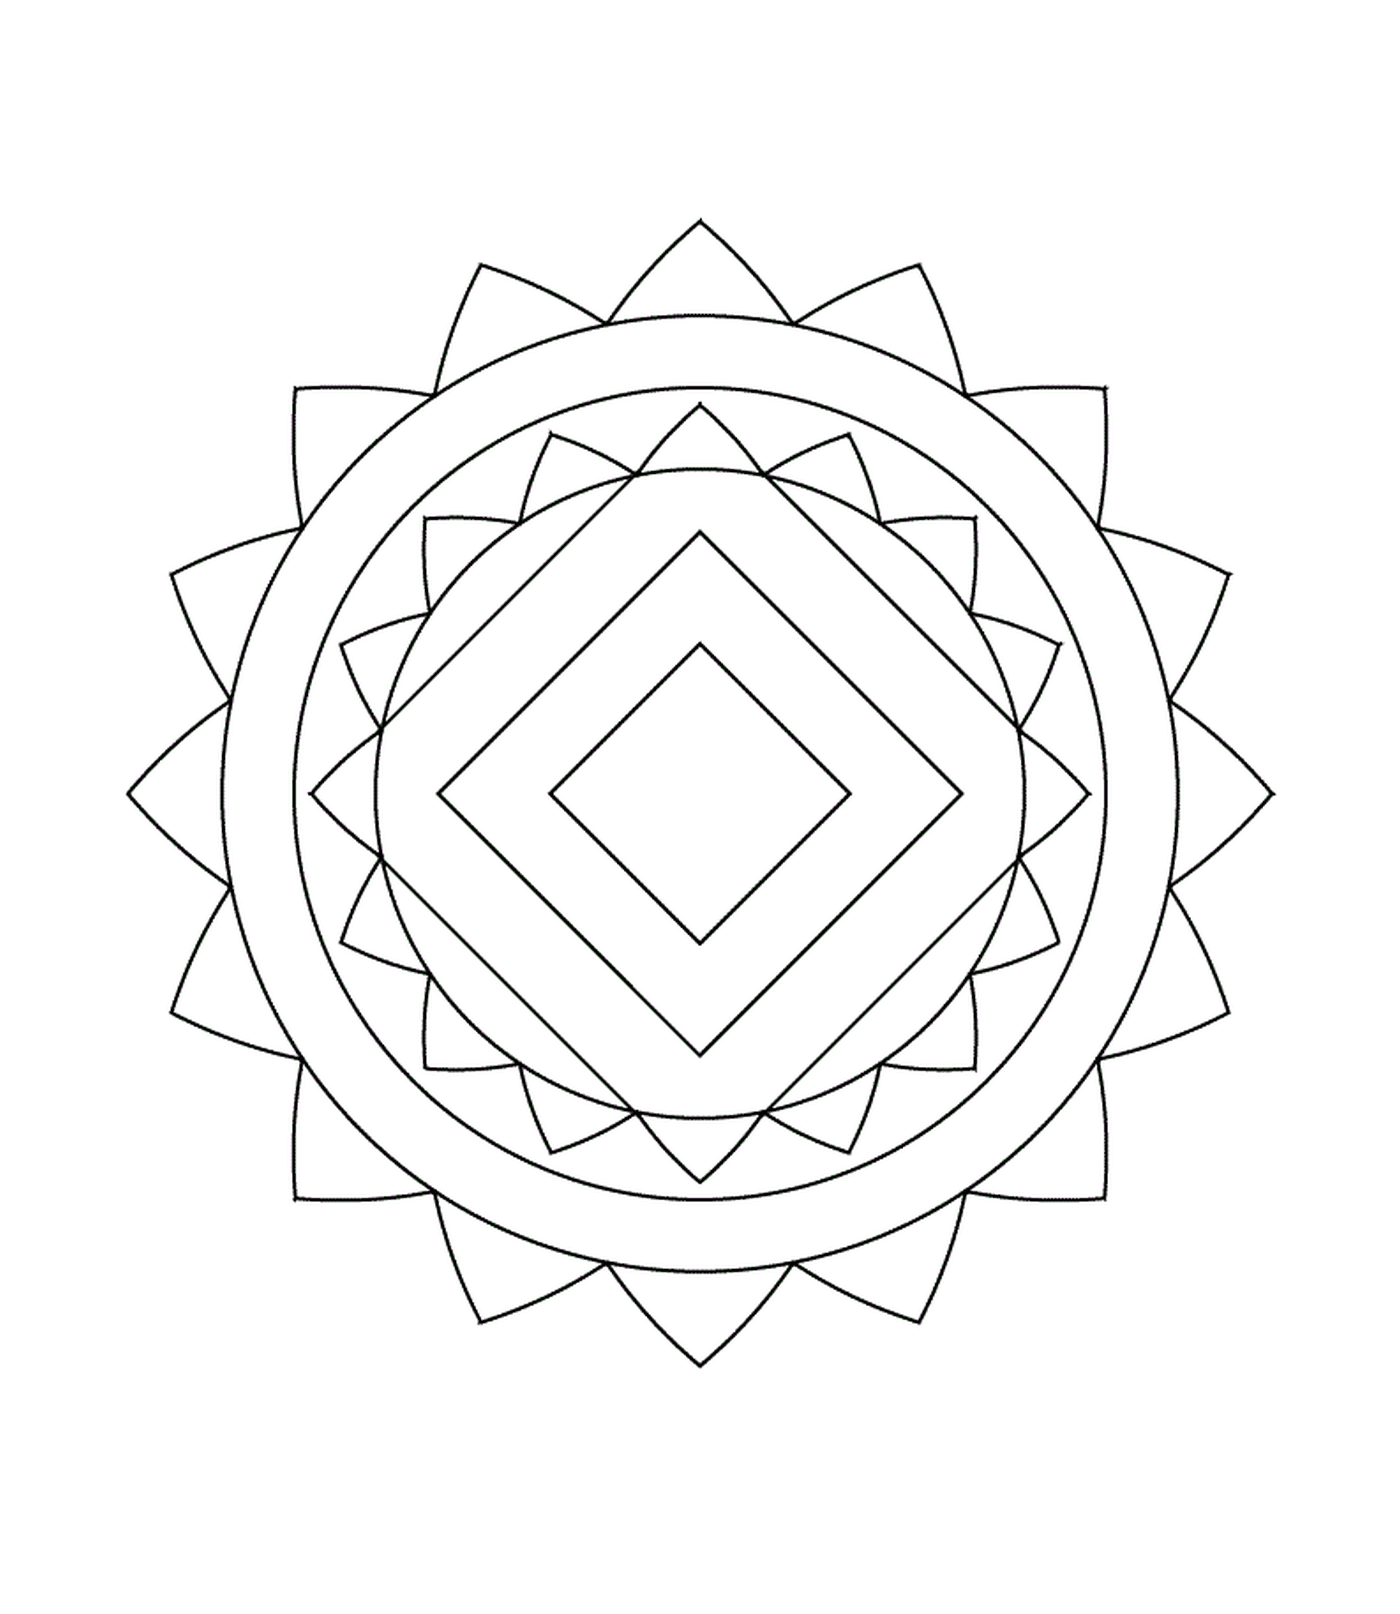  Dibujo geométrico 